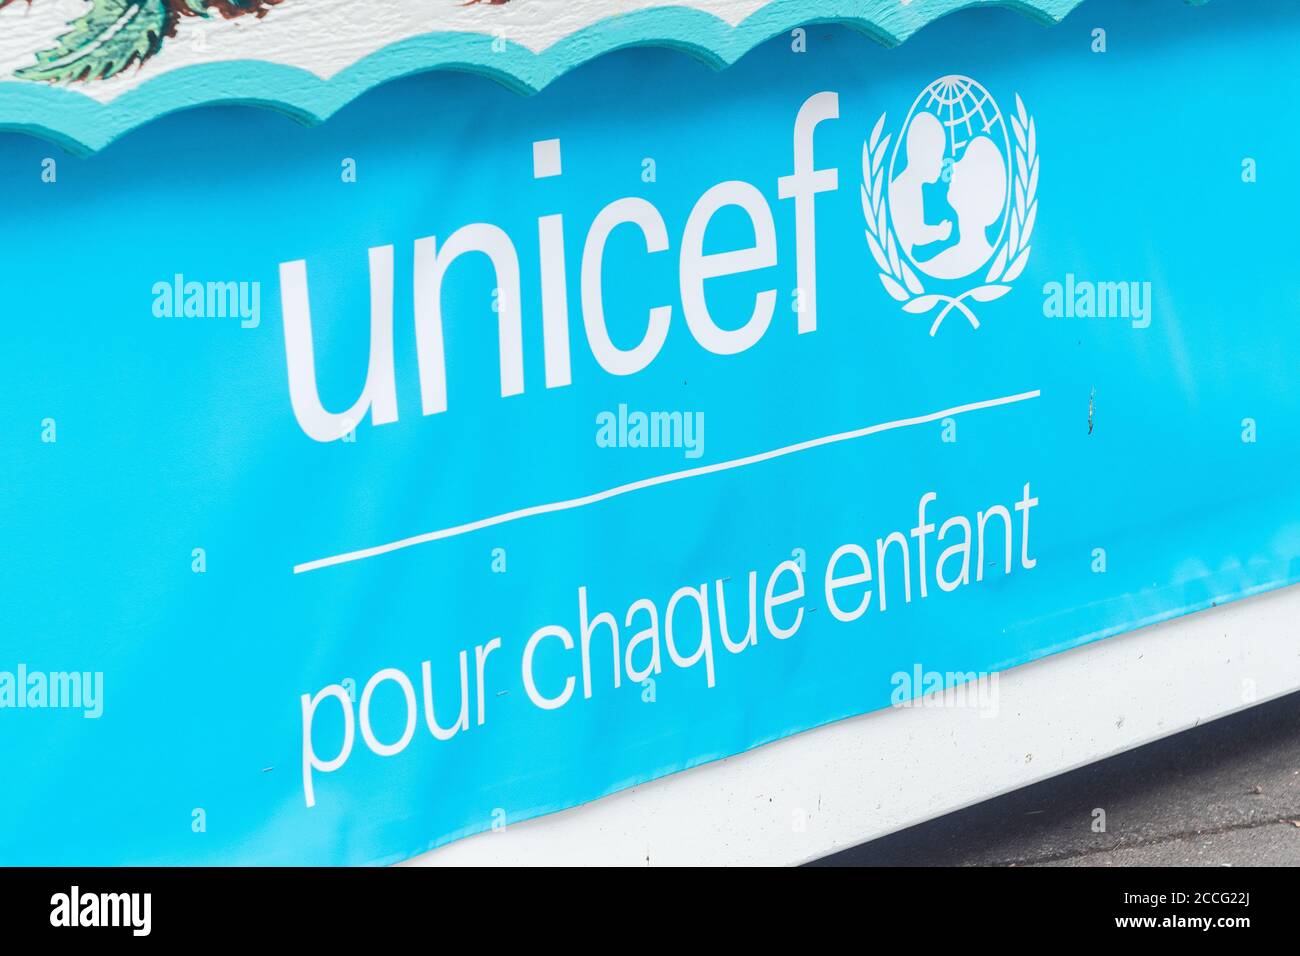 Bannière bleue de l'UNICEF, Paris, France. Fonds international d'urgence des Nations Unies pour l'enfance. 'Pour enfant'(pour chaque enfant). Banque D'Images